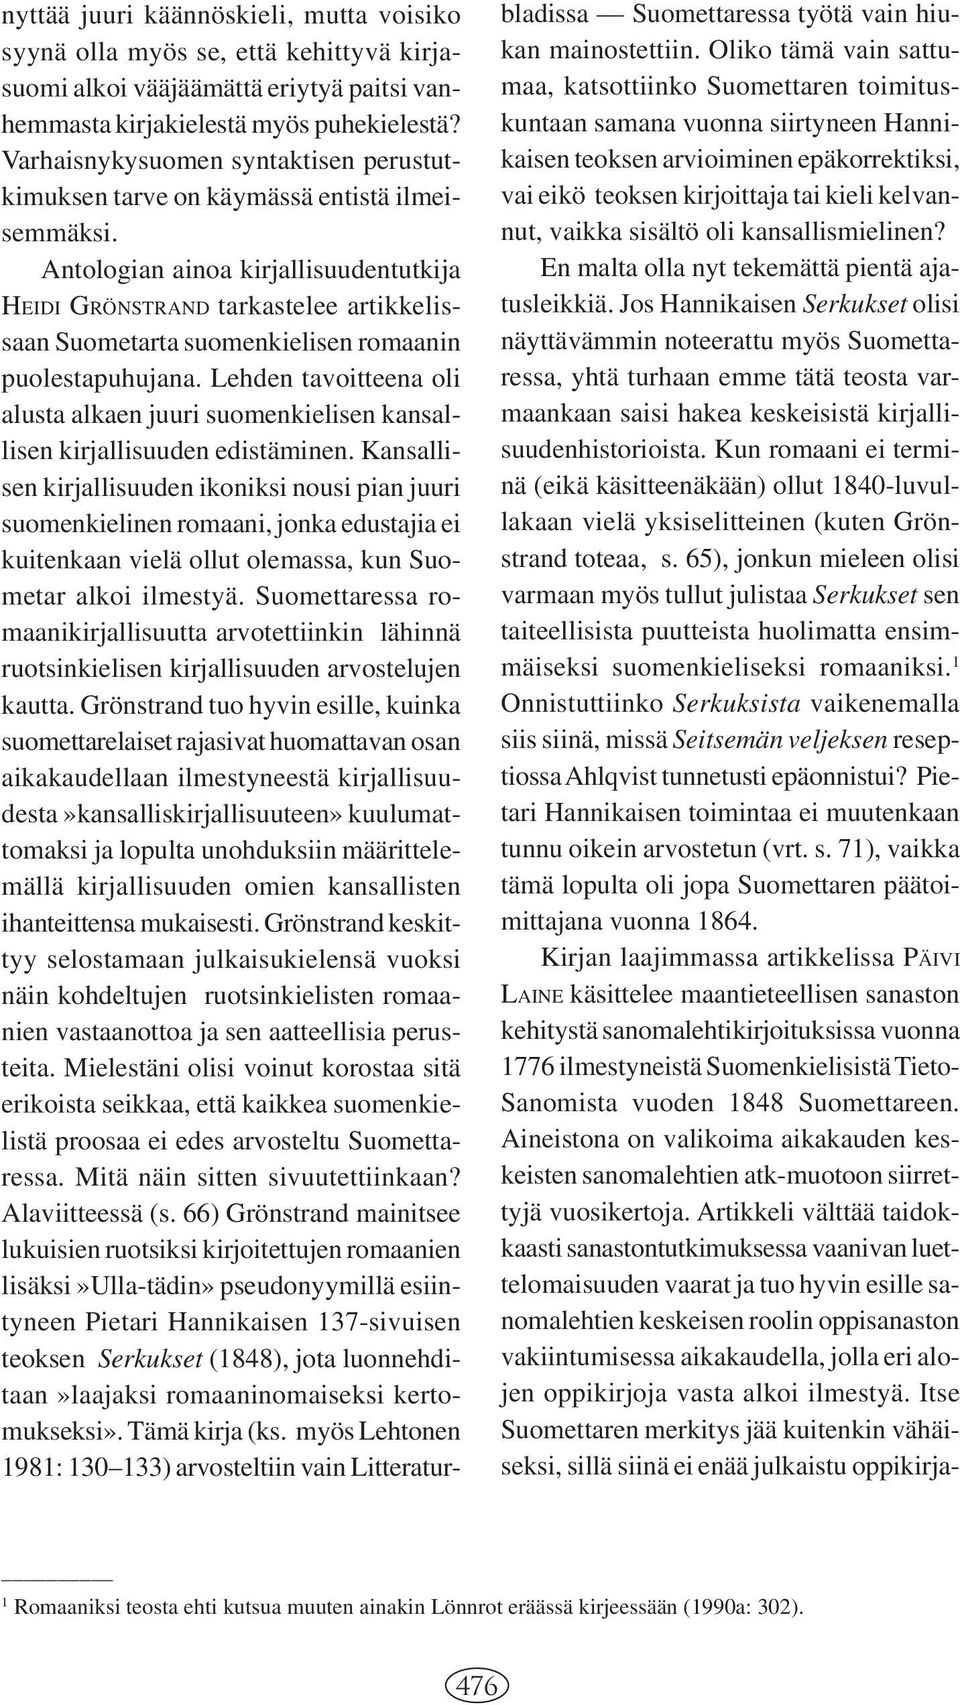 Antologian ainoa kirjallisuudentutkija HEIDI GRÖNSTRAND tarkastelee artikkelissaan Suometarta suomenkielisen romaanin puolestapuhujana.